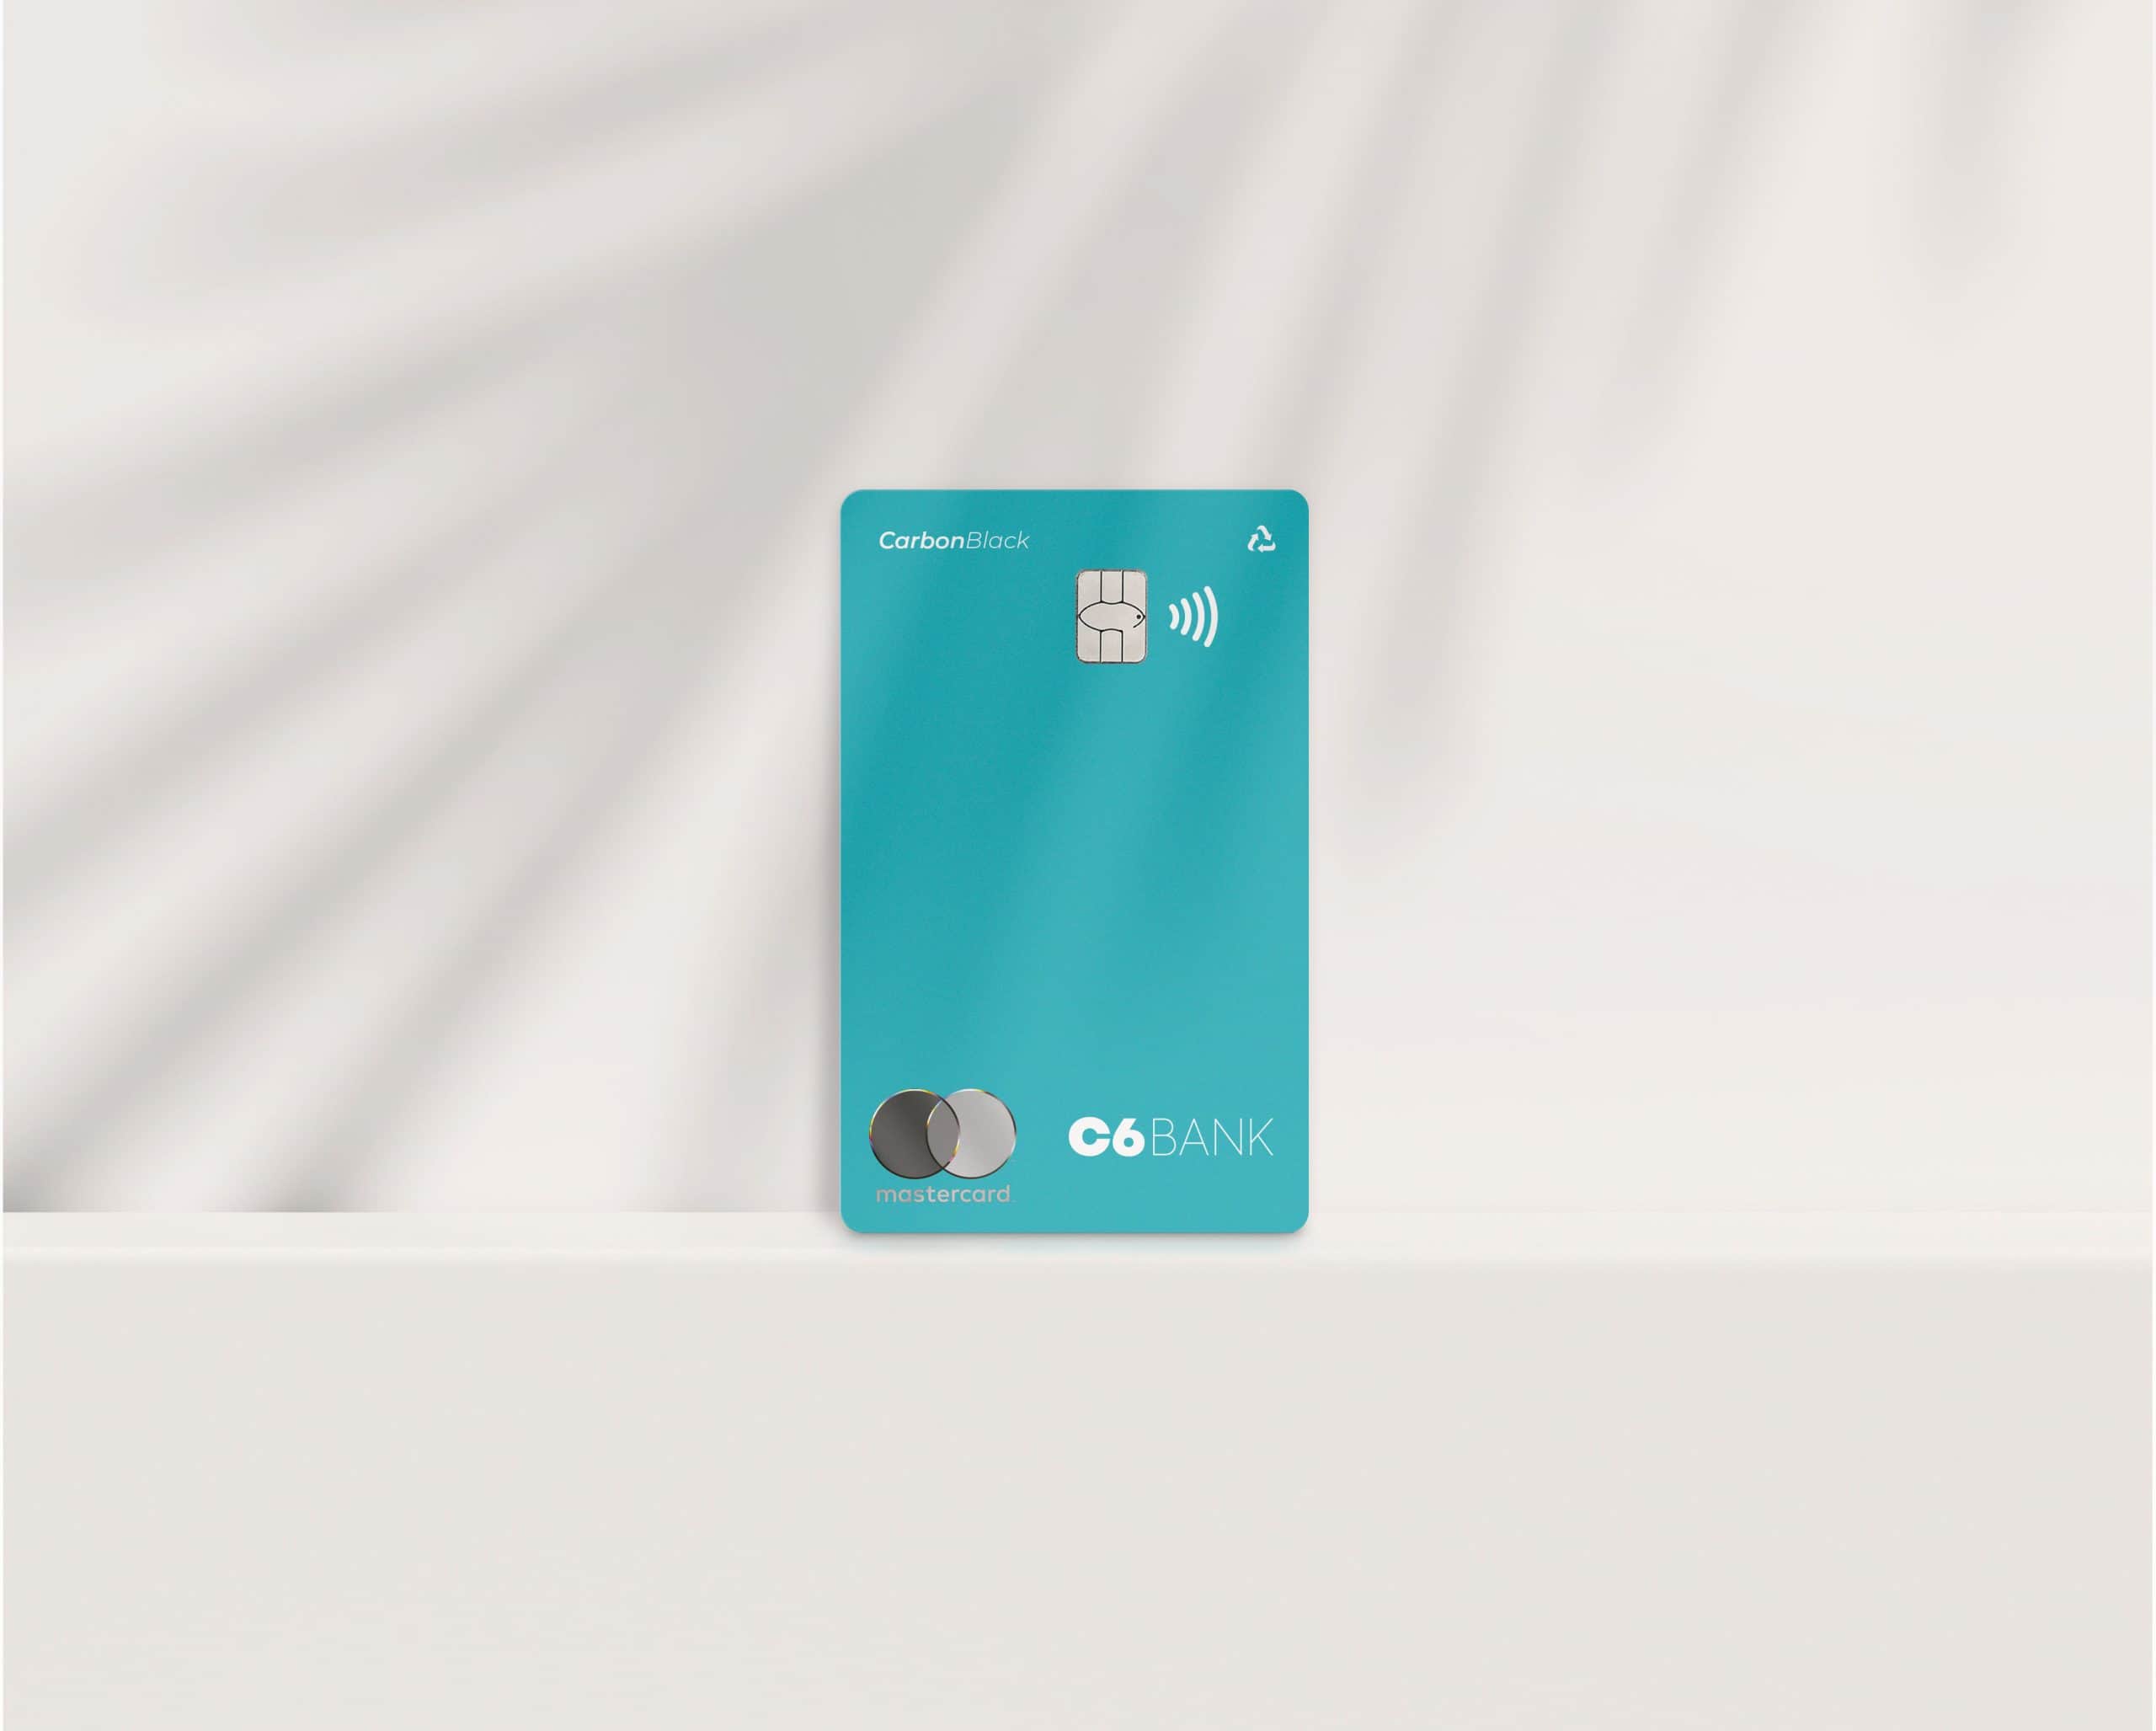 Foto do cartão Acqua, um cartão azul piscina, com o logo da Mastercard, logo do C6 Bank, a inscrição "Carbon Black", o chip, o sinal de NFC e o sinal de "retornável", posicionado em pé, em um fundo branco com efeito de movimento.